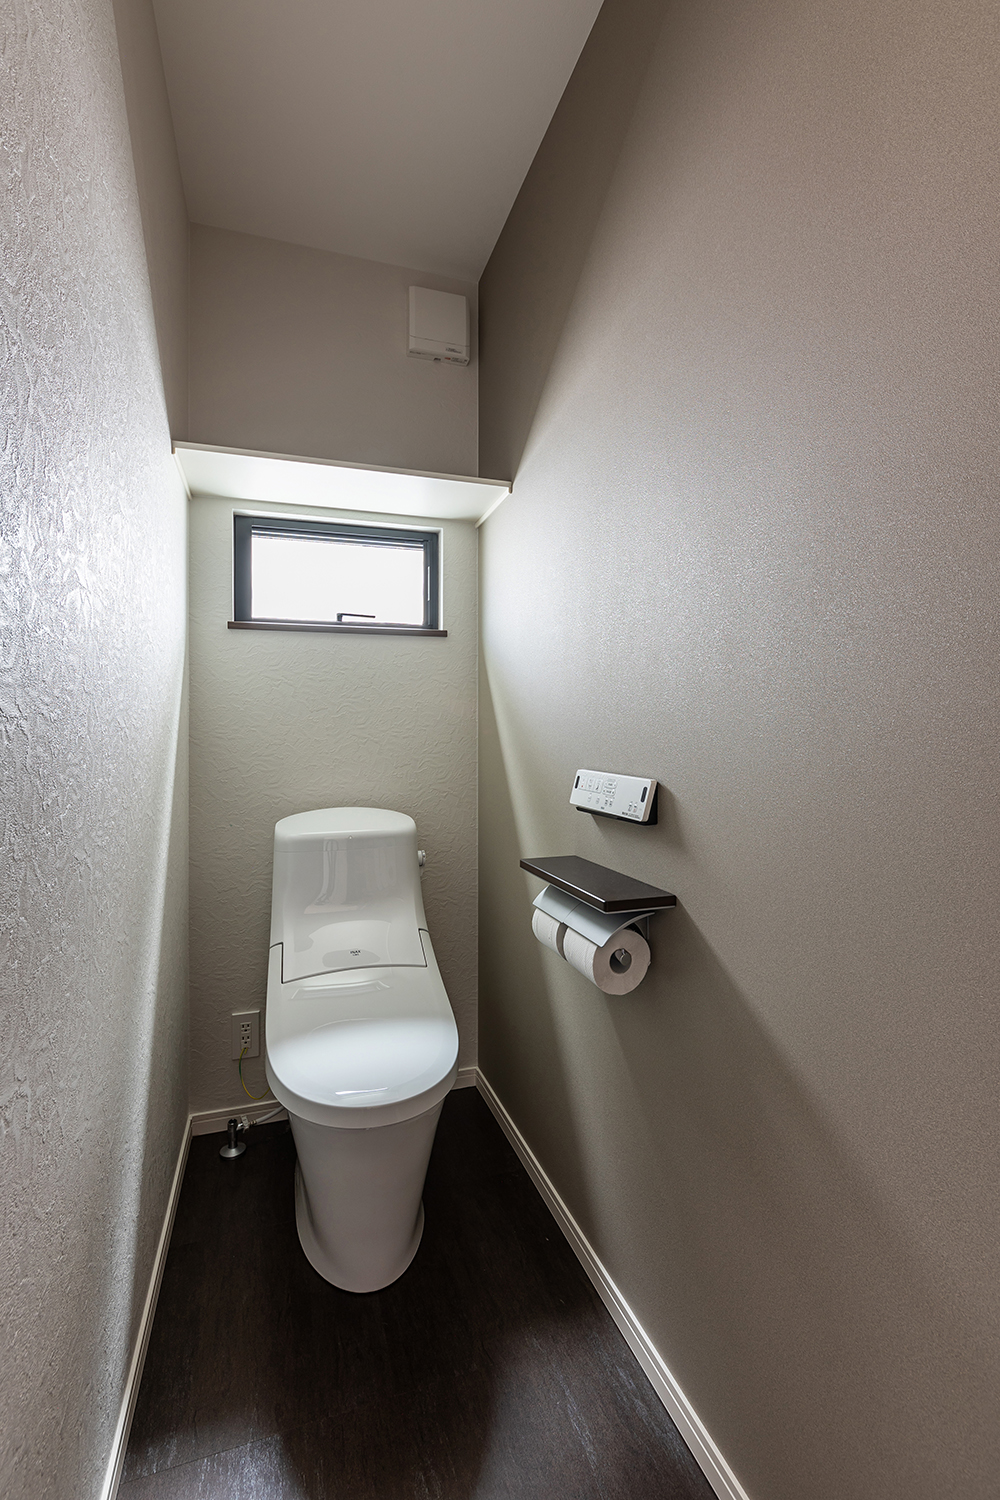 明るい光が差し込むトイレ。<br />
どちらもモダンで高級感のある空間に仕上げました。<br />
